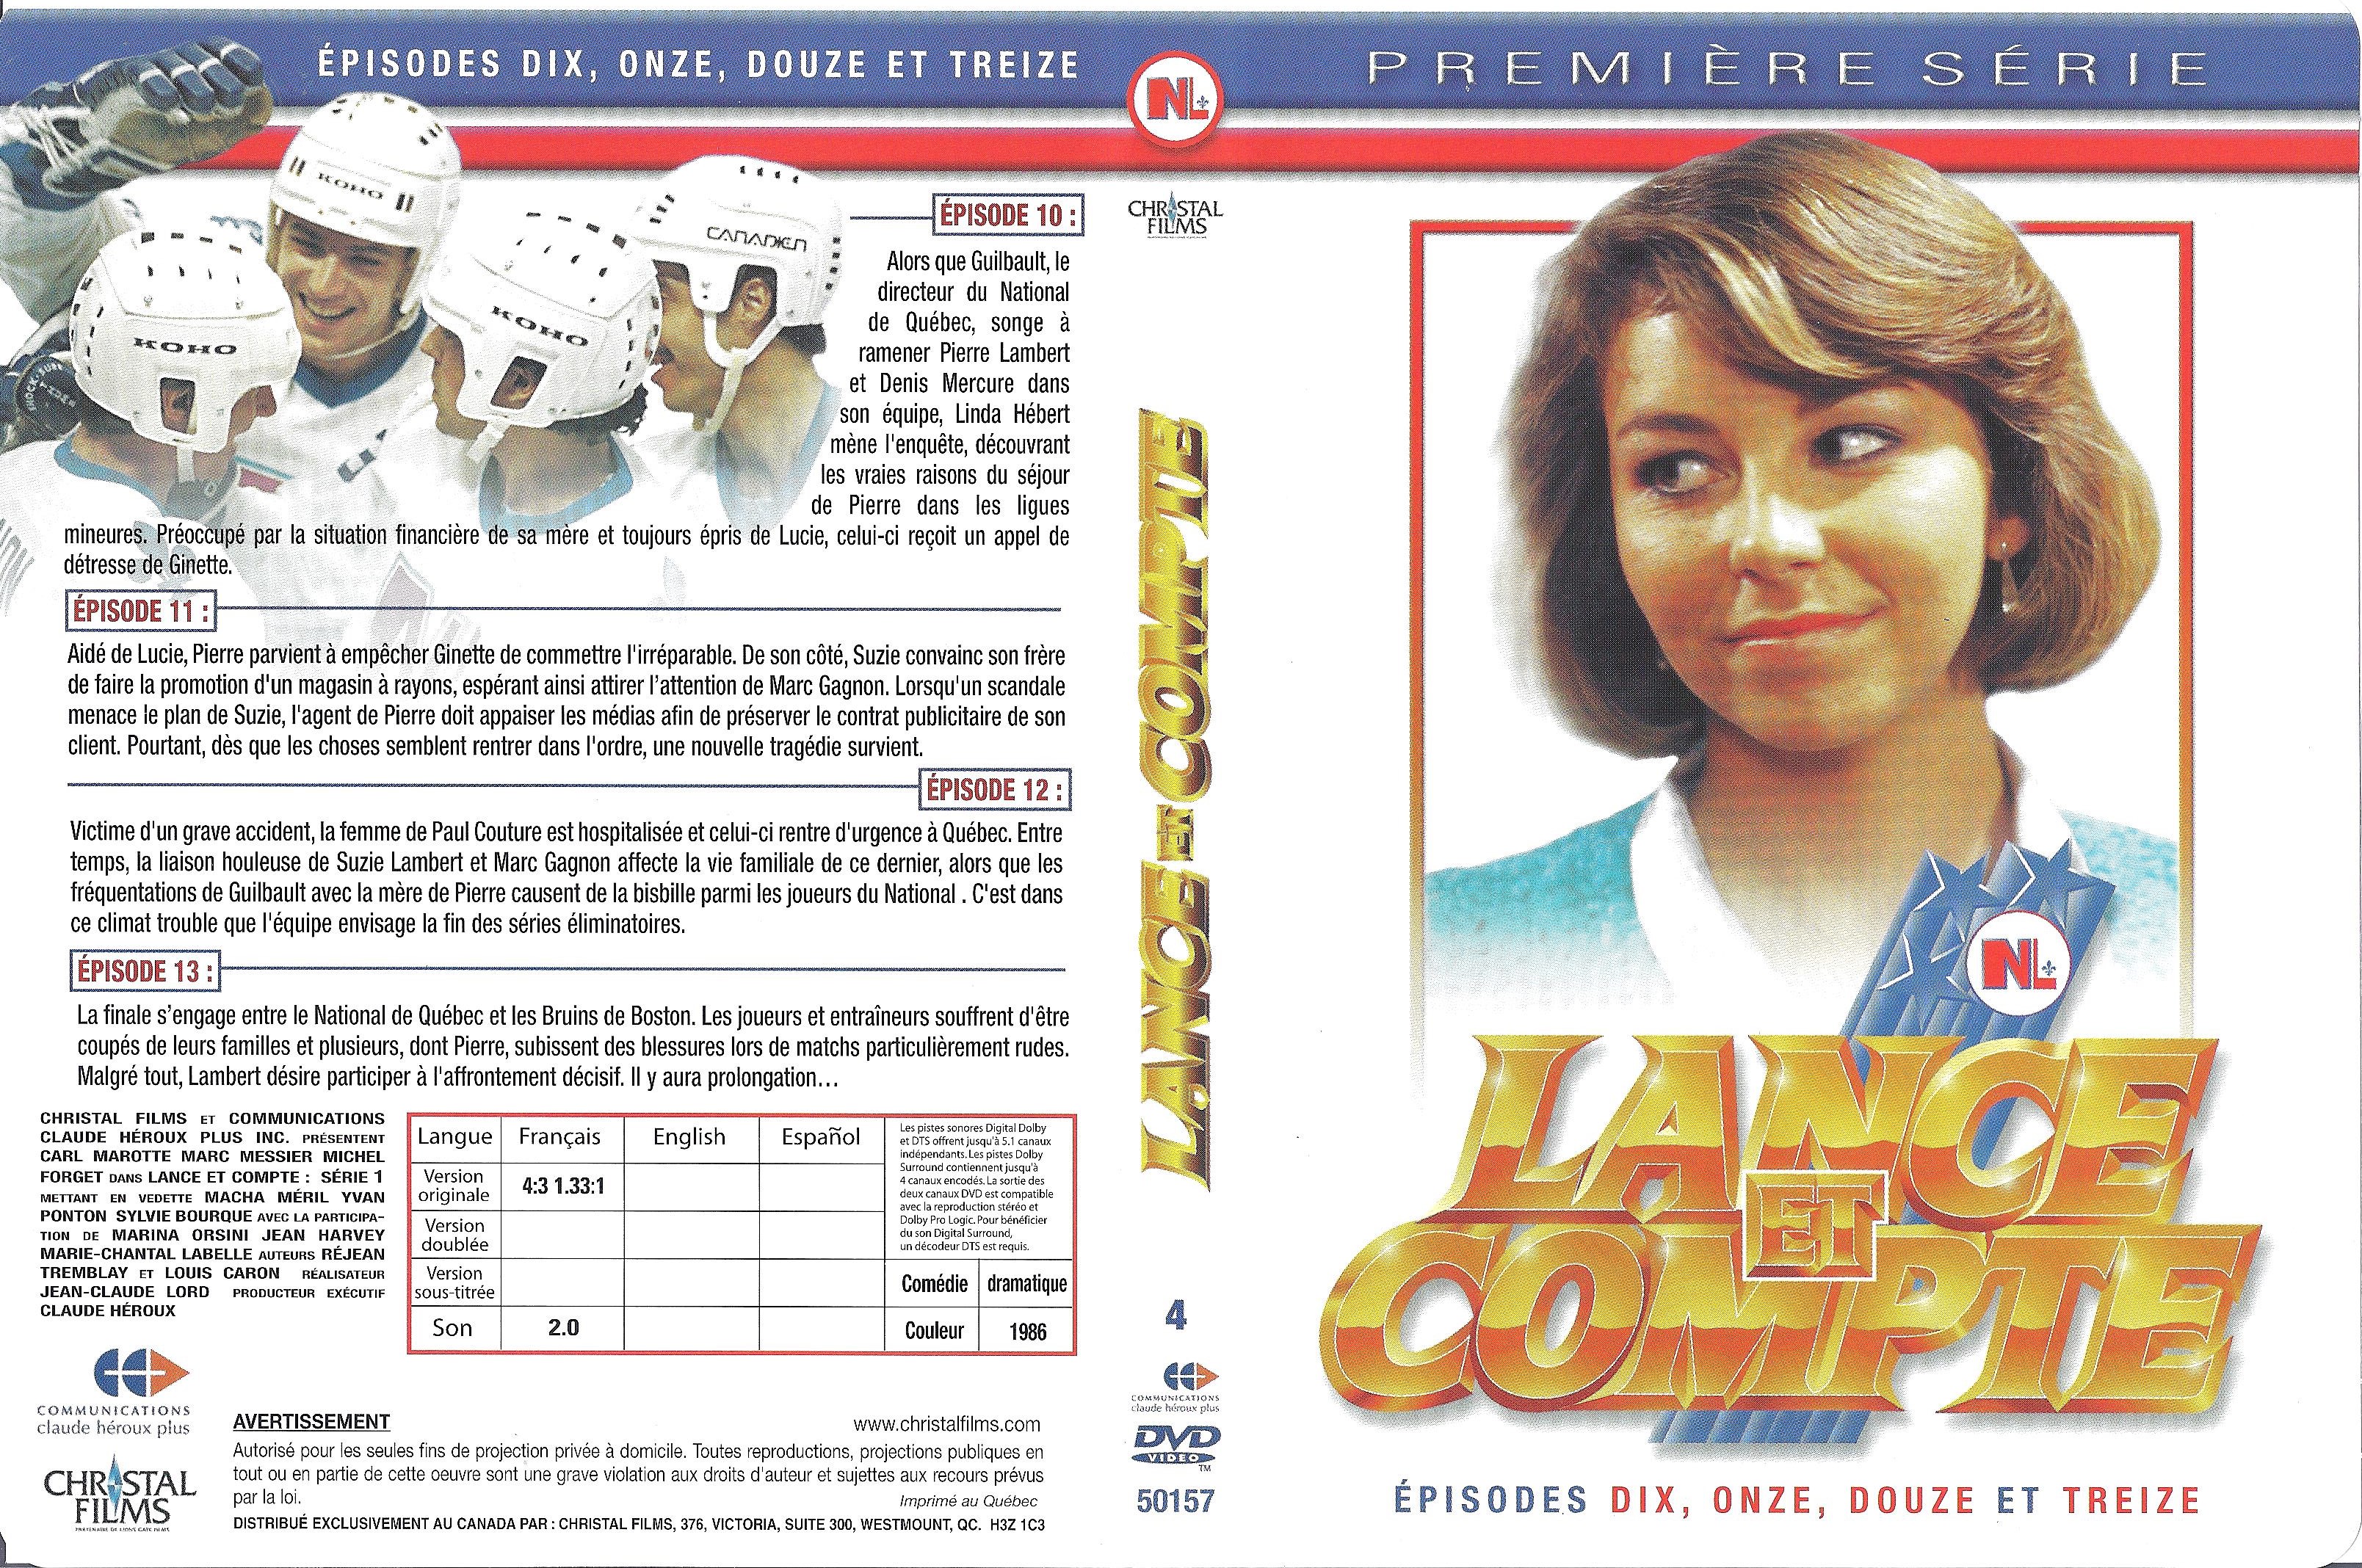 Jaquette DVD Lance et compte Saison 1 DVD 4